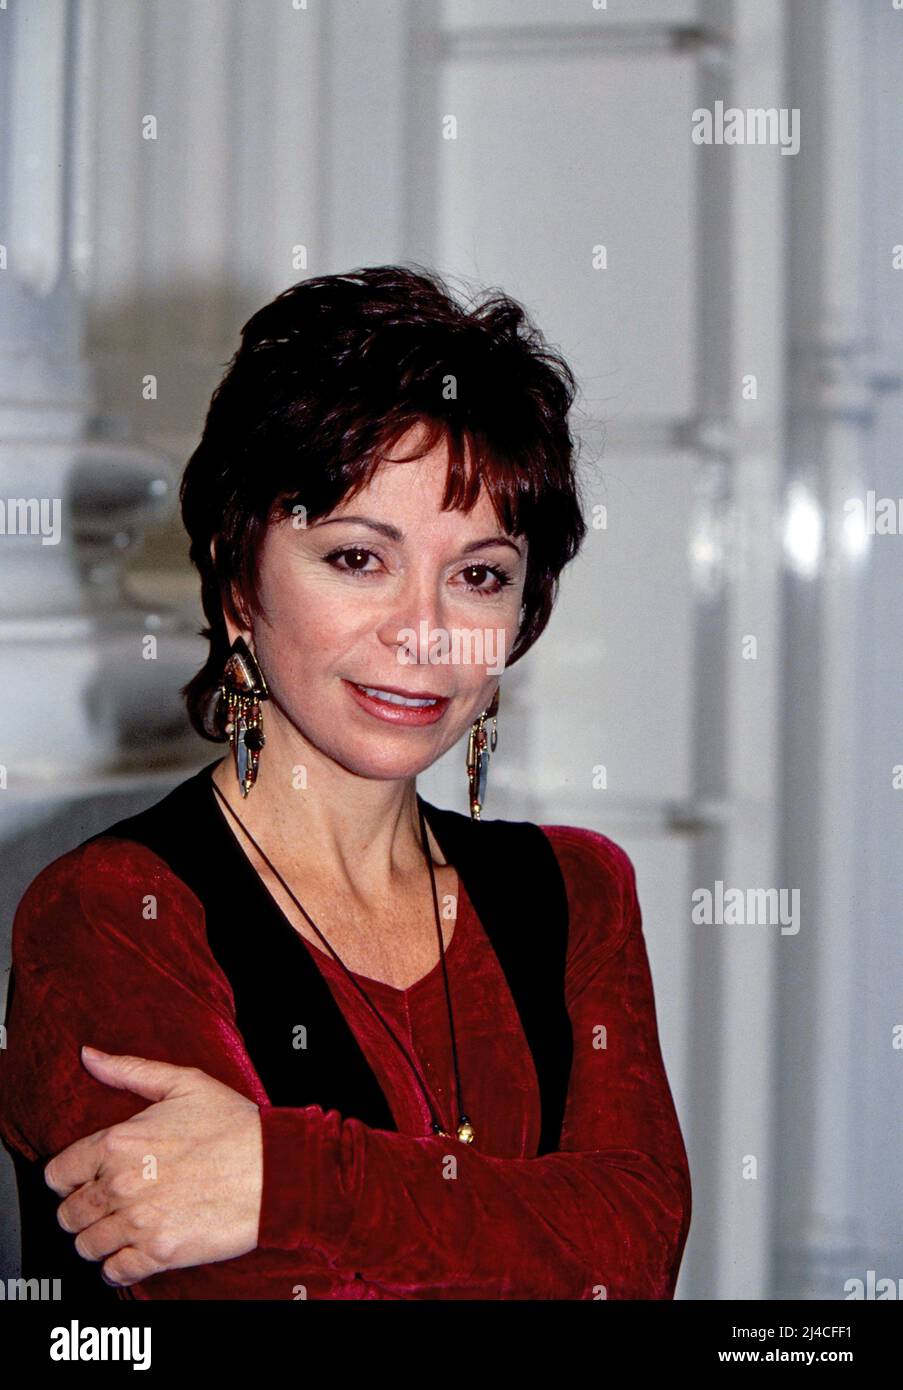 Isabel Allende, chilenisch amerikanische Schriftstellerin und Journalistin, bei einem Pressetermin in Hamburg, Deutschland 1993 Stock Photo